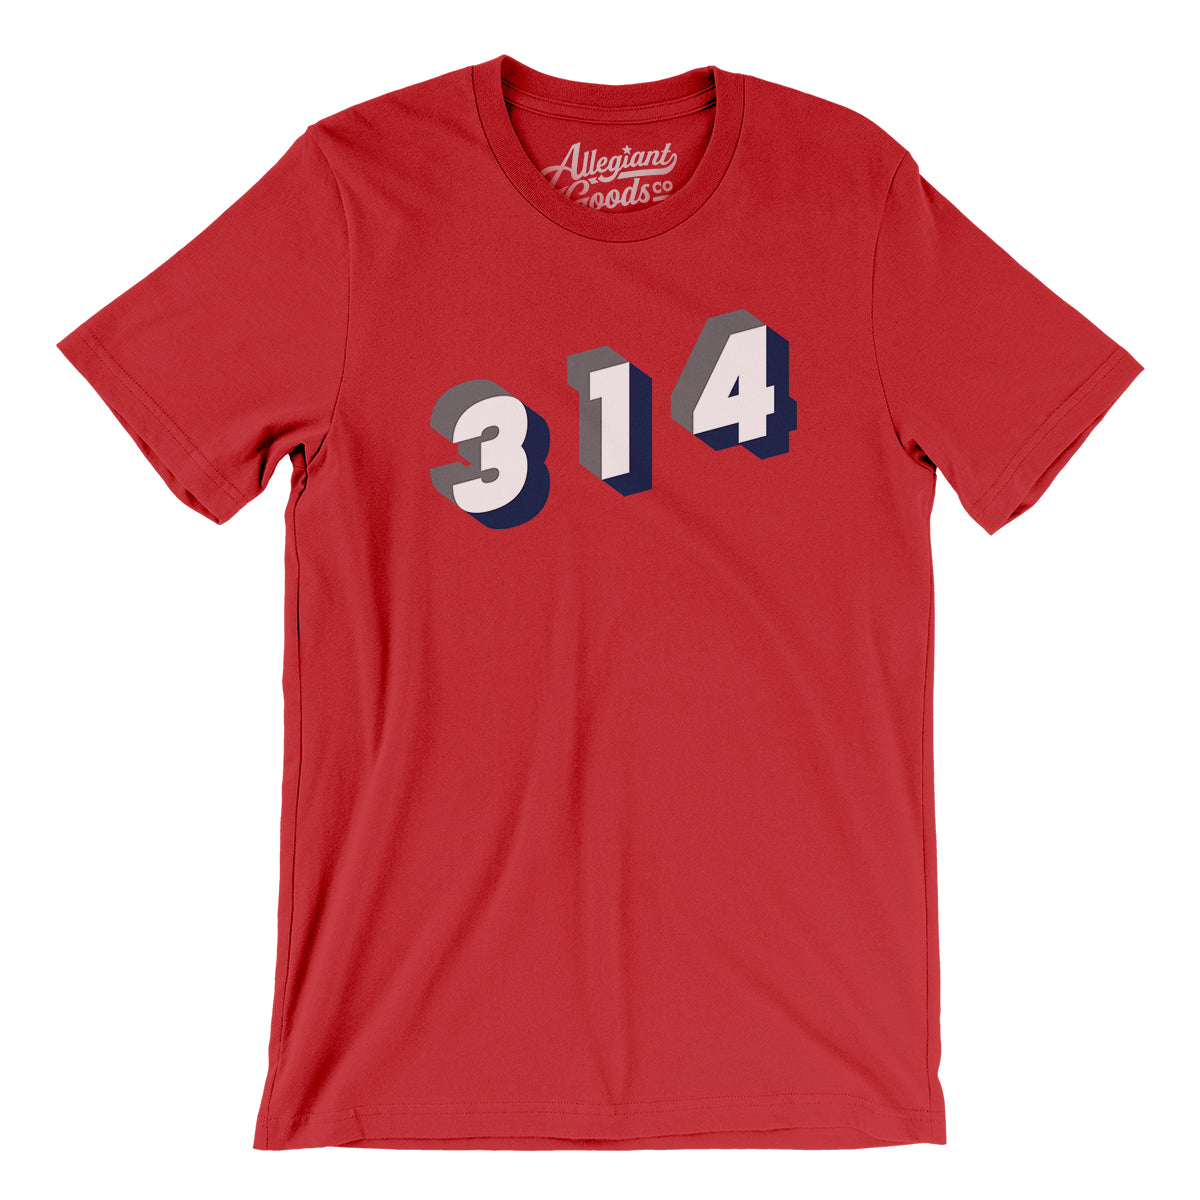 BoredWalk Women's St Louis 314 Area Code T-Shirt, Medium / Navy